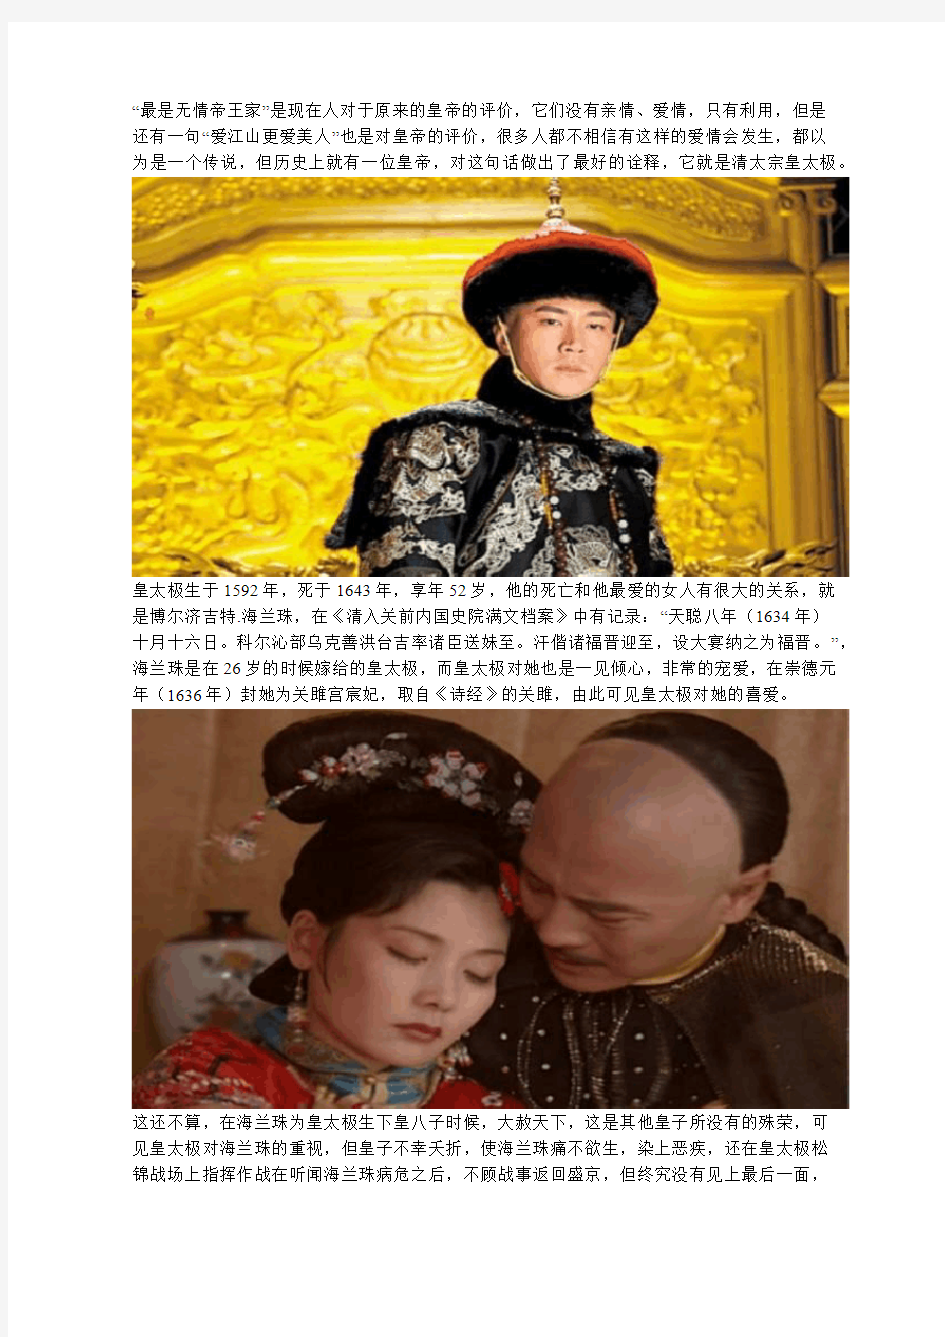 常说“爱江山更爱美人”,这位皇帝对它做出了最好的诠释